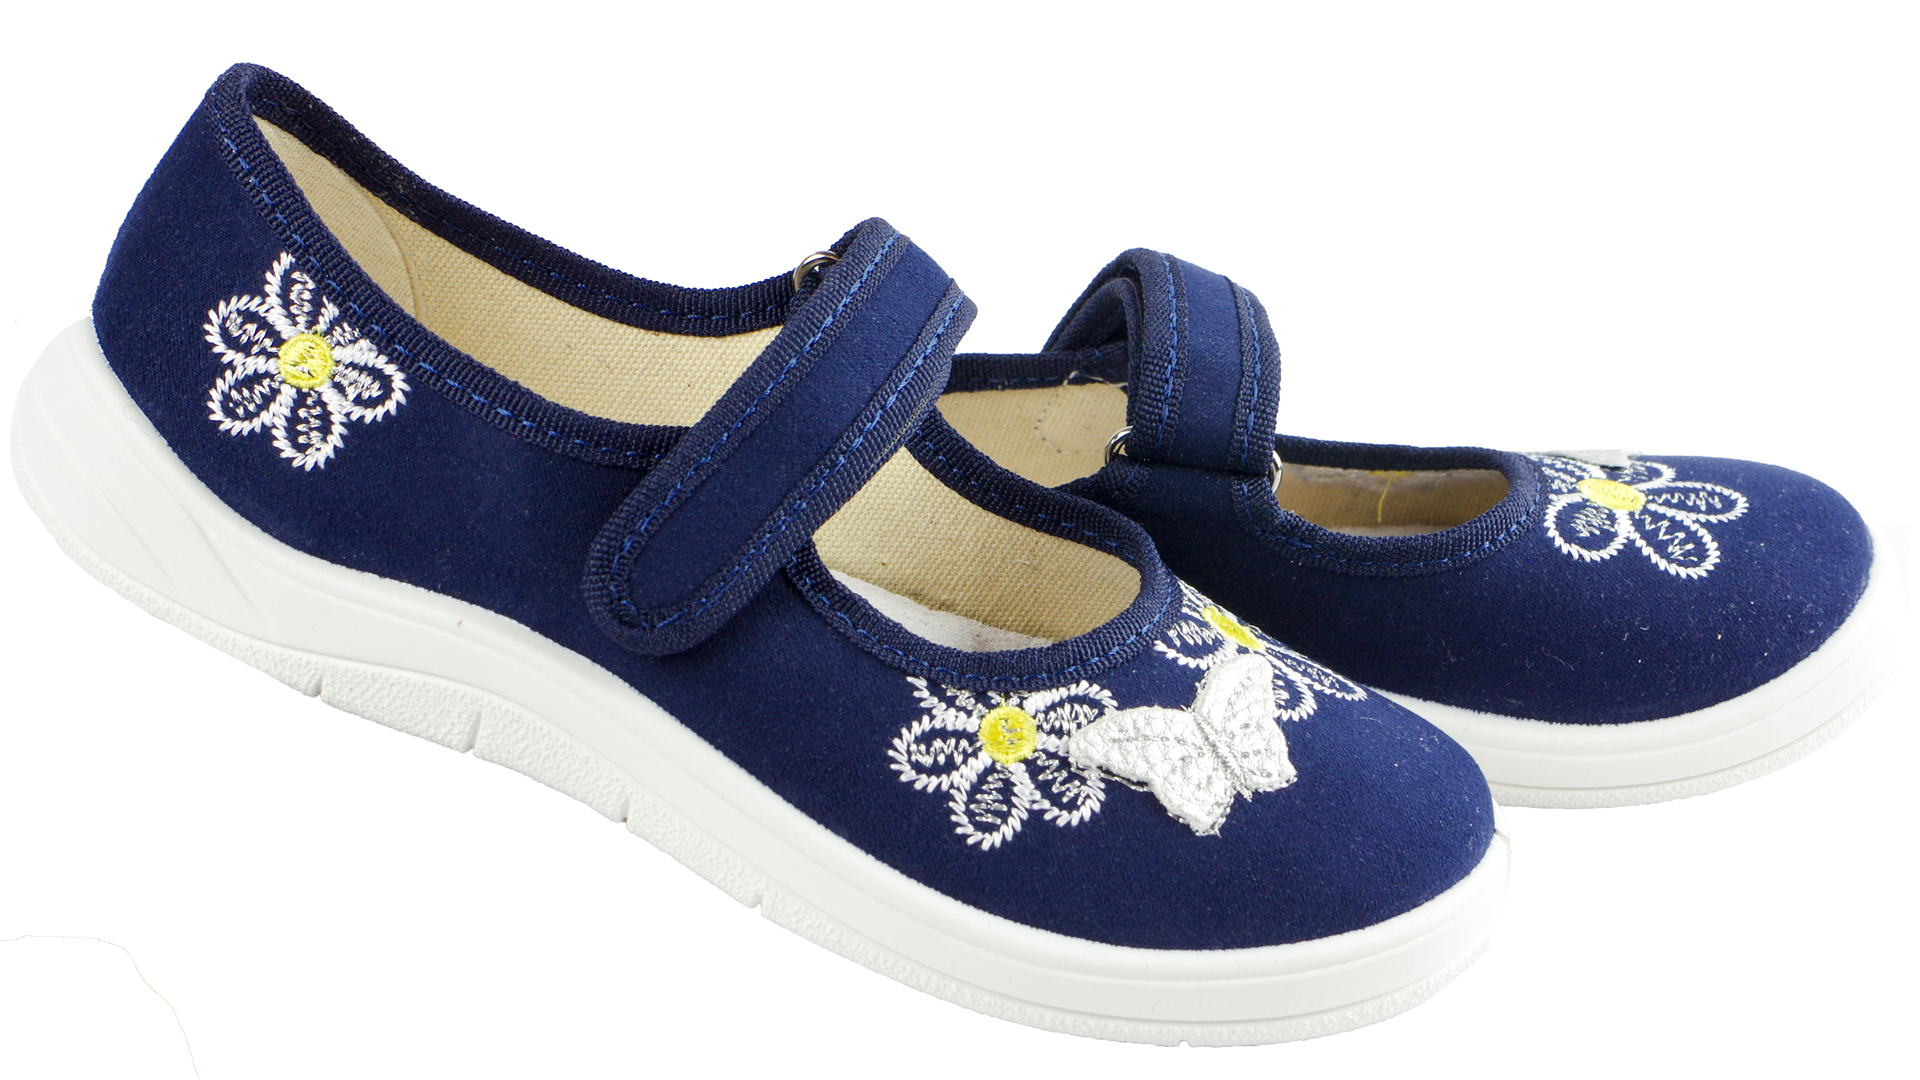 Текстильная обувь для девочек Тапочки Алина (1812) цвет темно-синий 24-30 размеры – Sole Kids. Фото 2